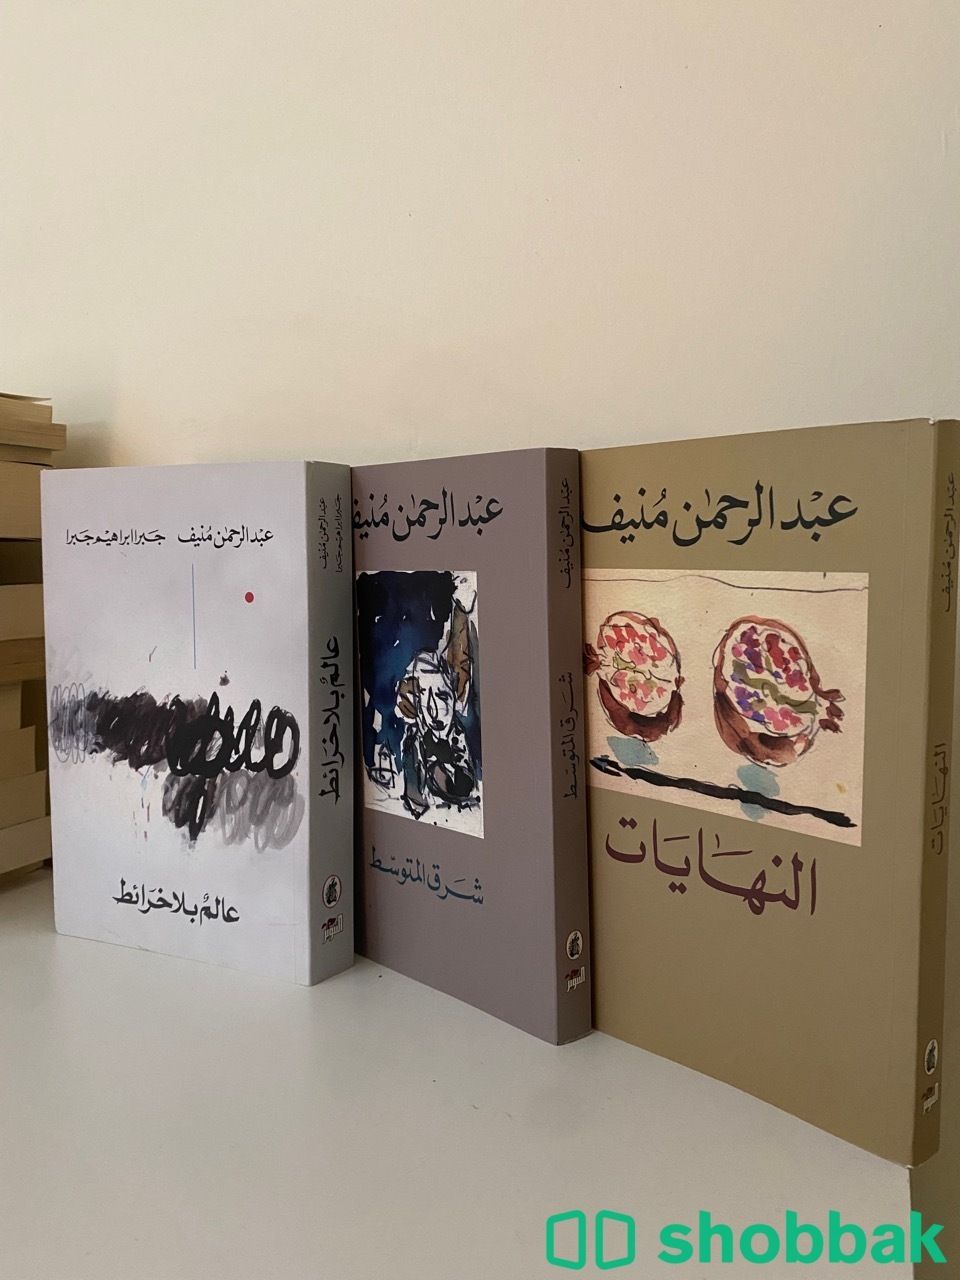 ٣ كتب للكاتب عبدالرحمن منيف Shobbak Saudi Arabia